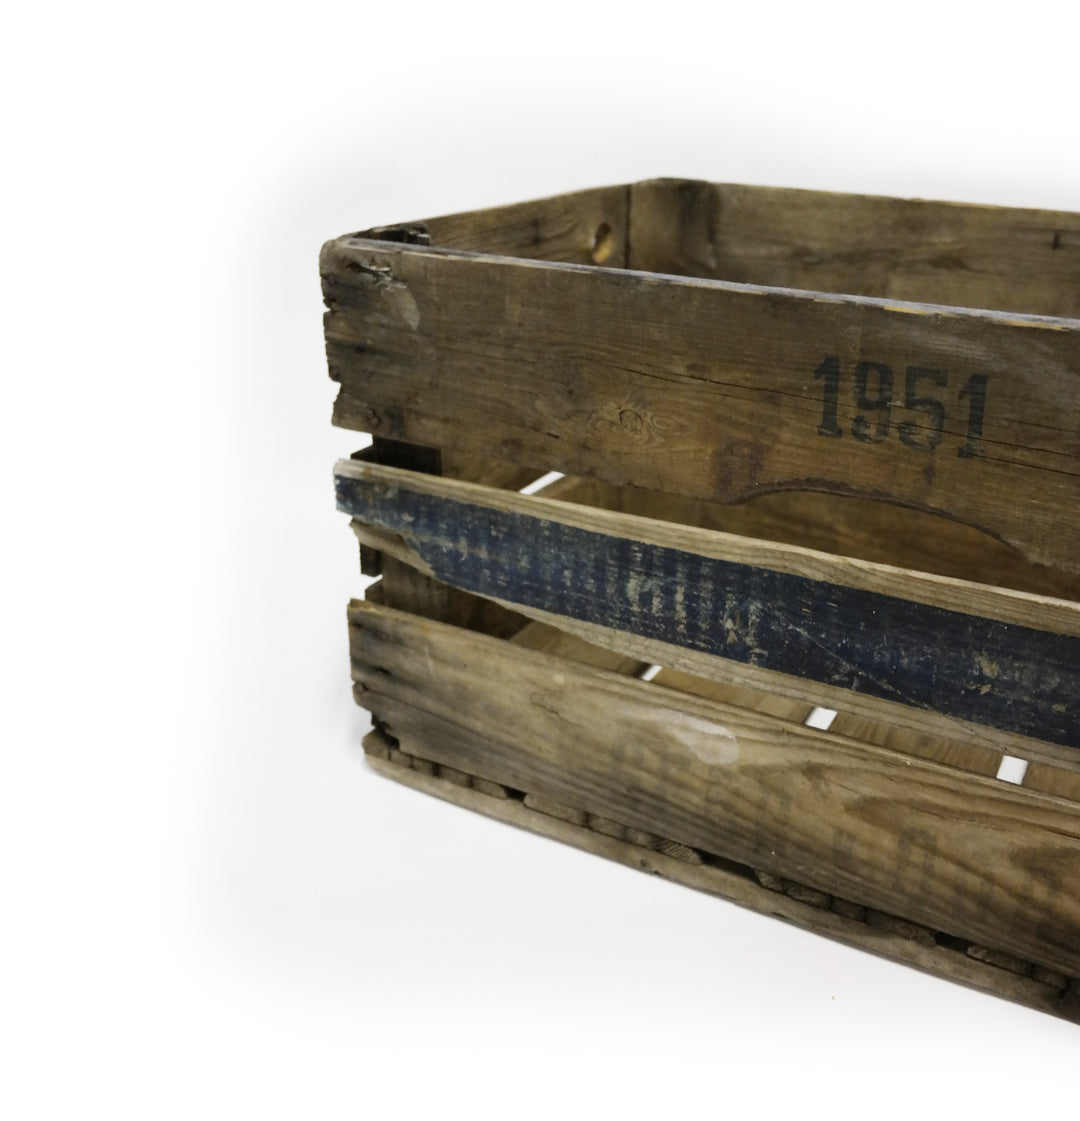 Aito, vanha puulaatikko somisteeksi häihin – vaikkapa baariin